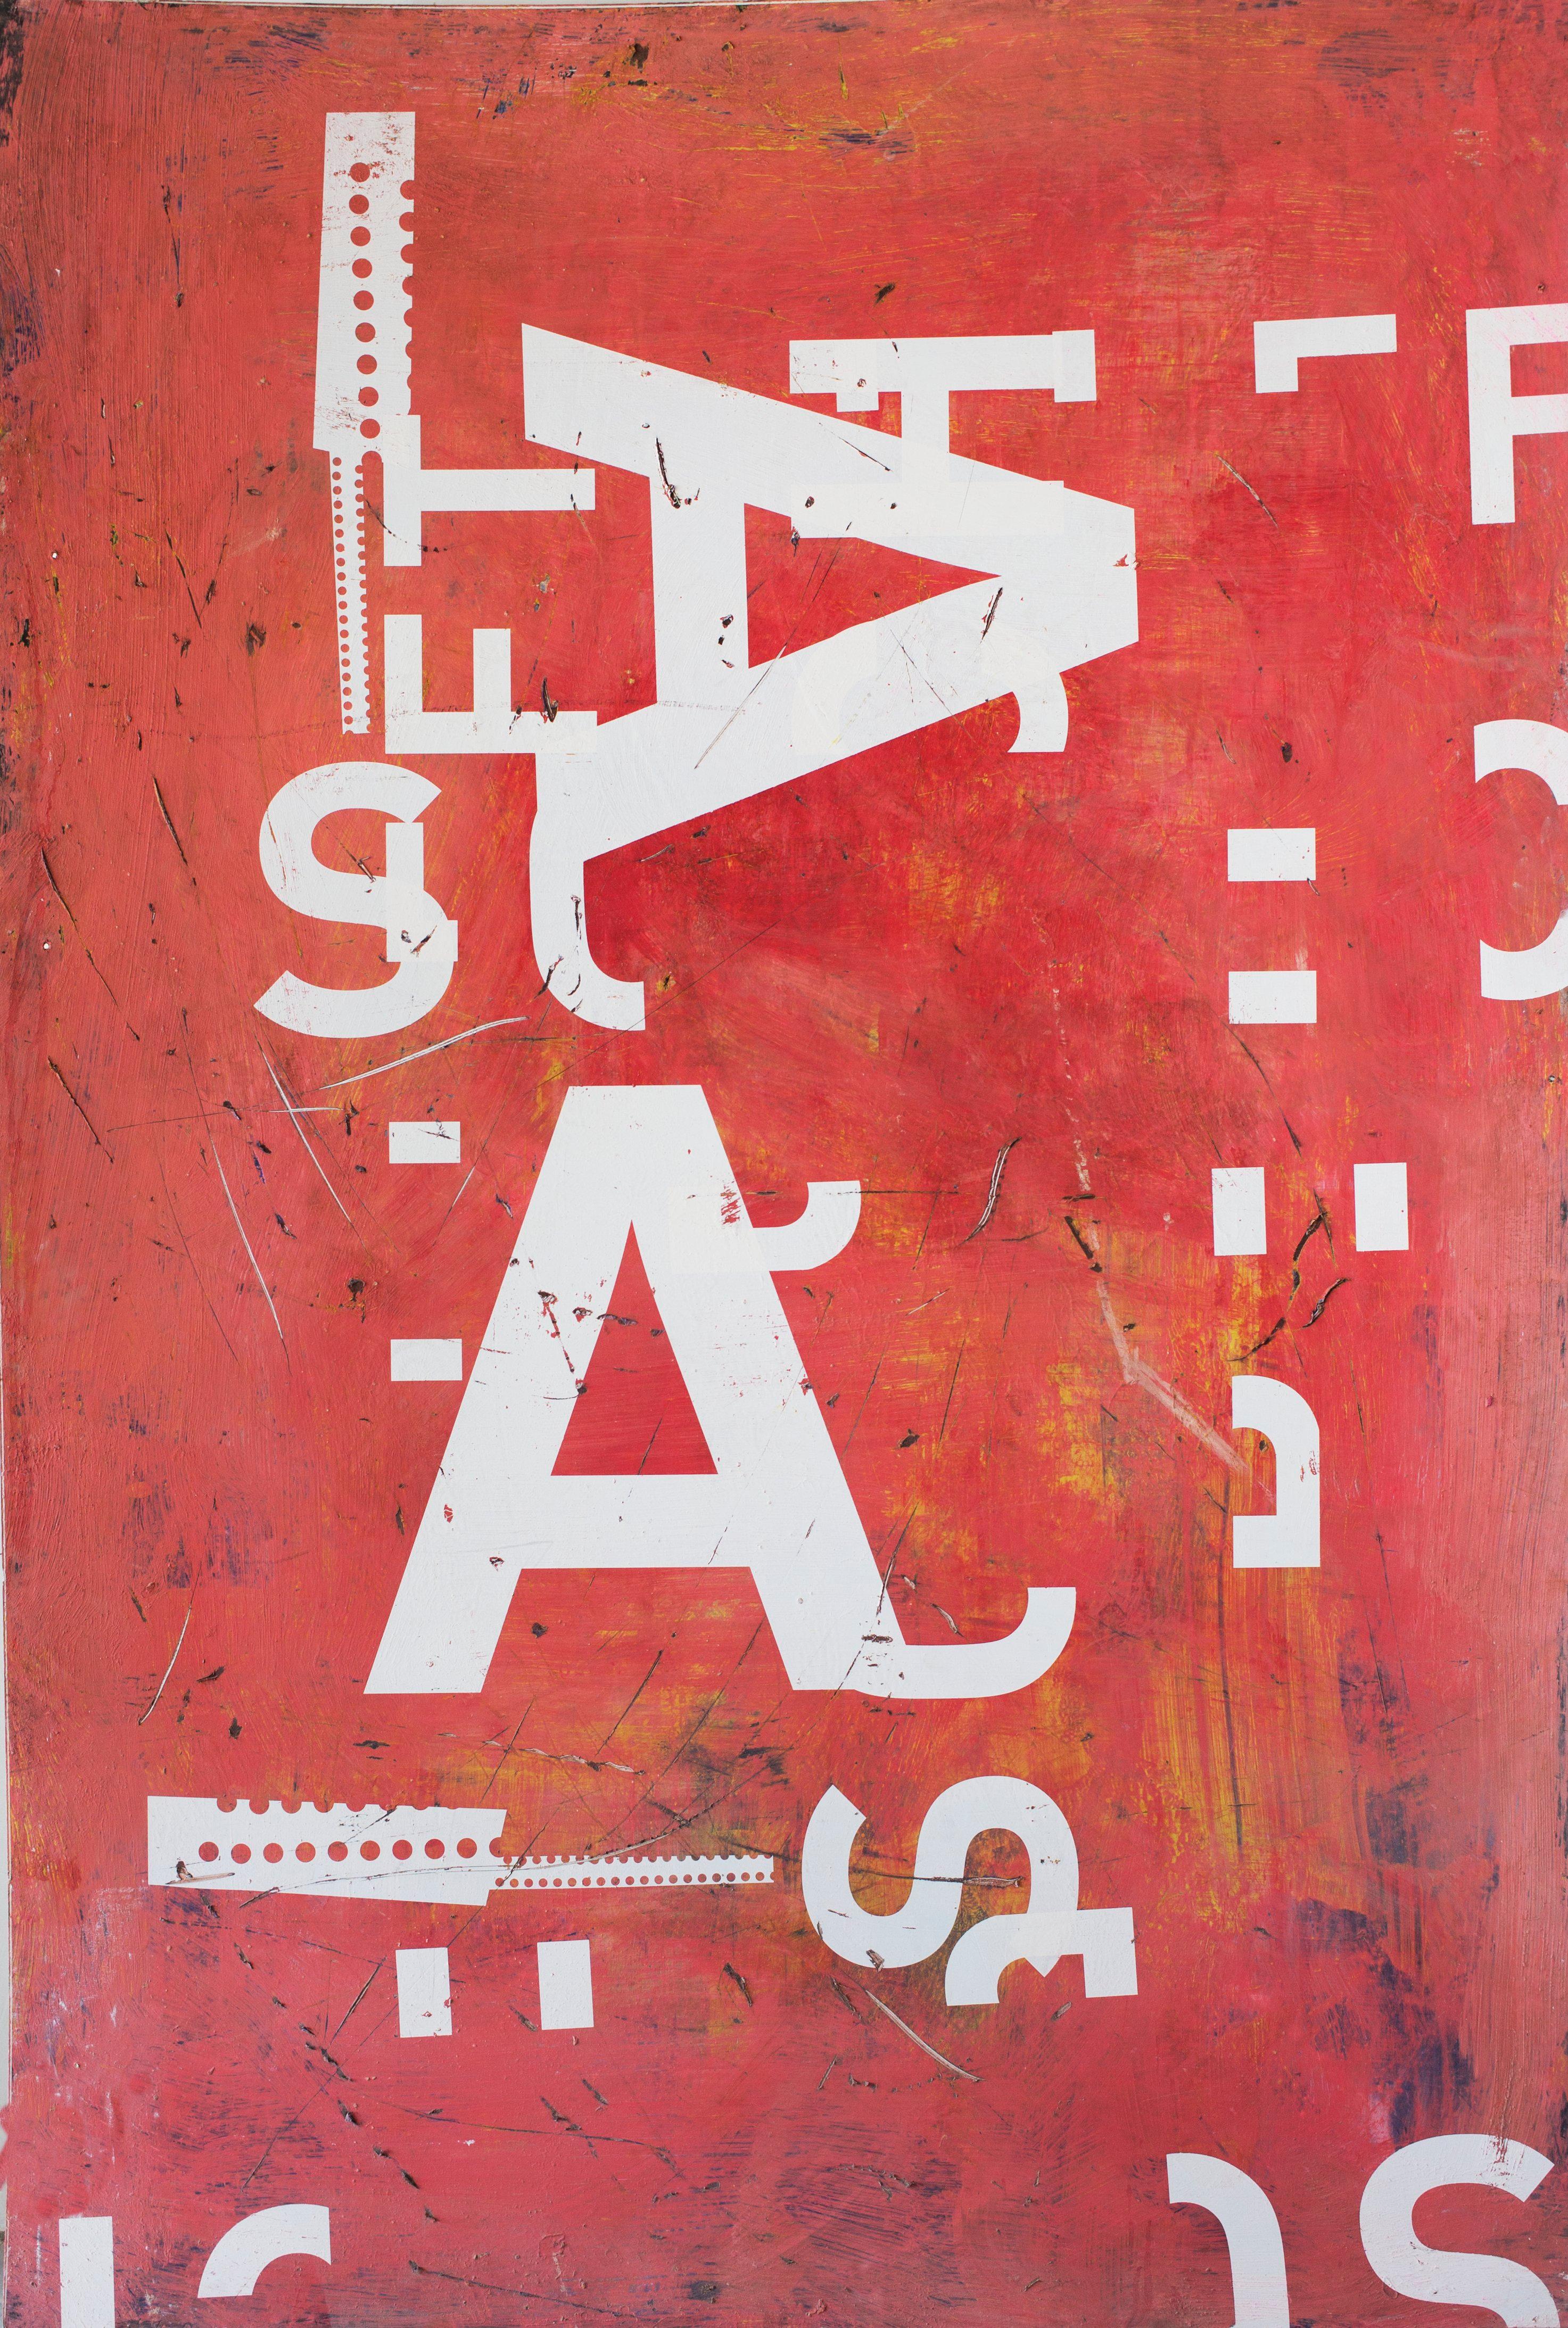 Grand AA ist ein Werk des spanischen zeitgenössischen Künstlers Ramon Enrich aus der Serie "Typografie". 
Siebdruck und halbfester Kunststoff, 200 cm x 135 cm, 2011. Wird ungerahmt verkauft.
In dieser Serie von Werken, die zwischen figurativ und